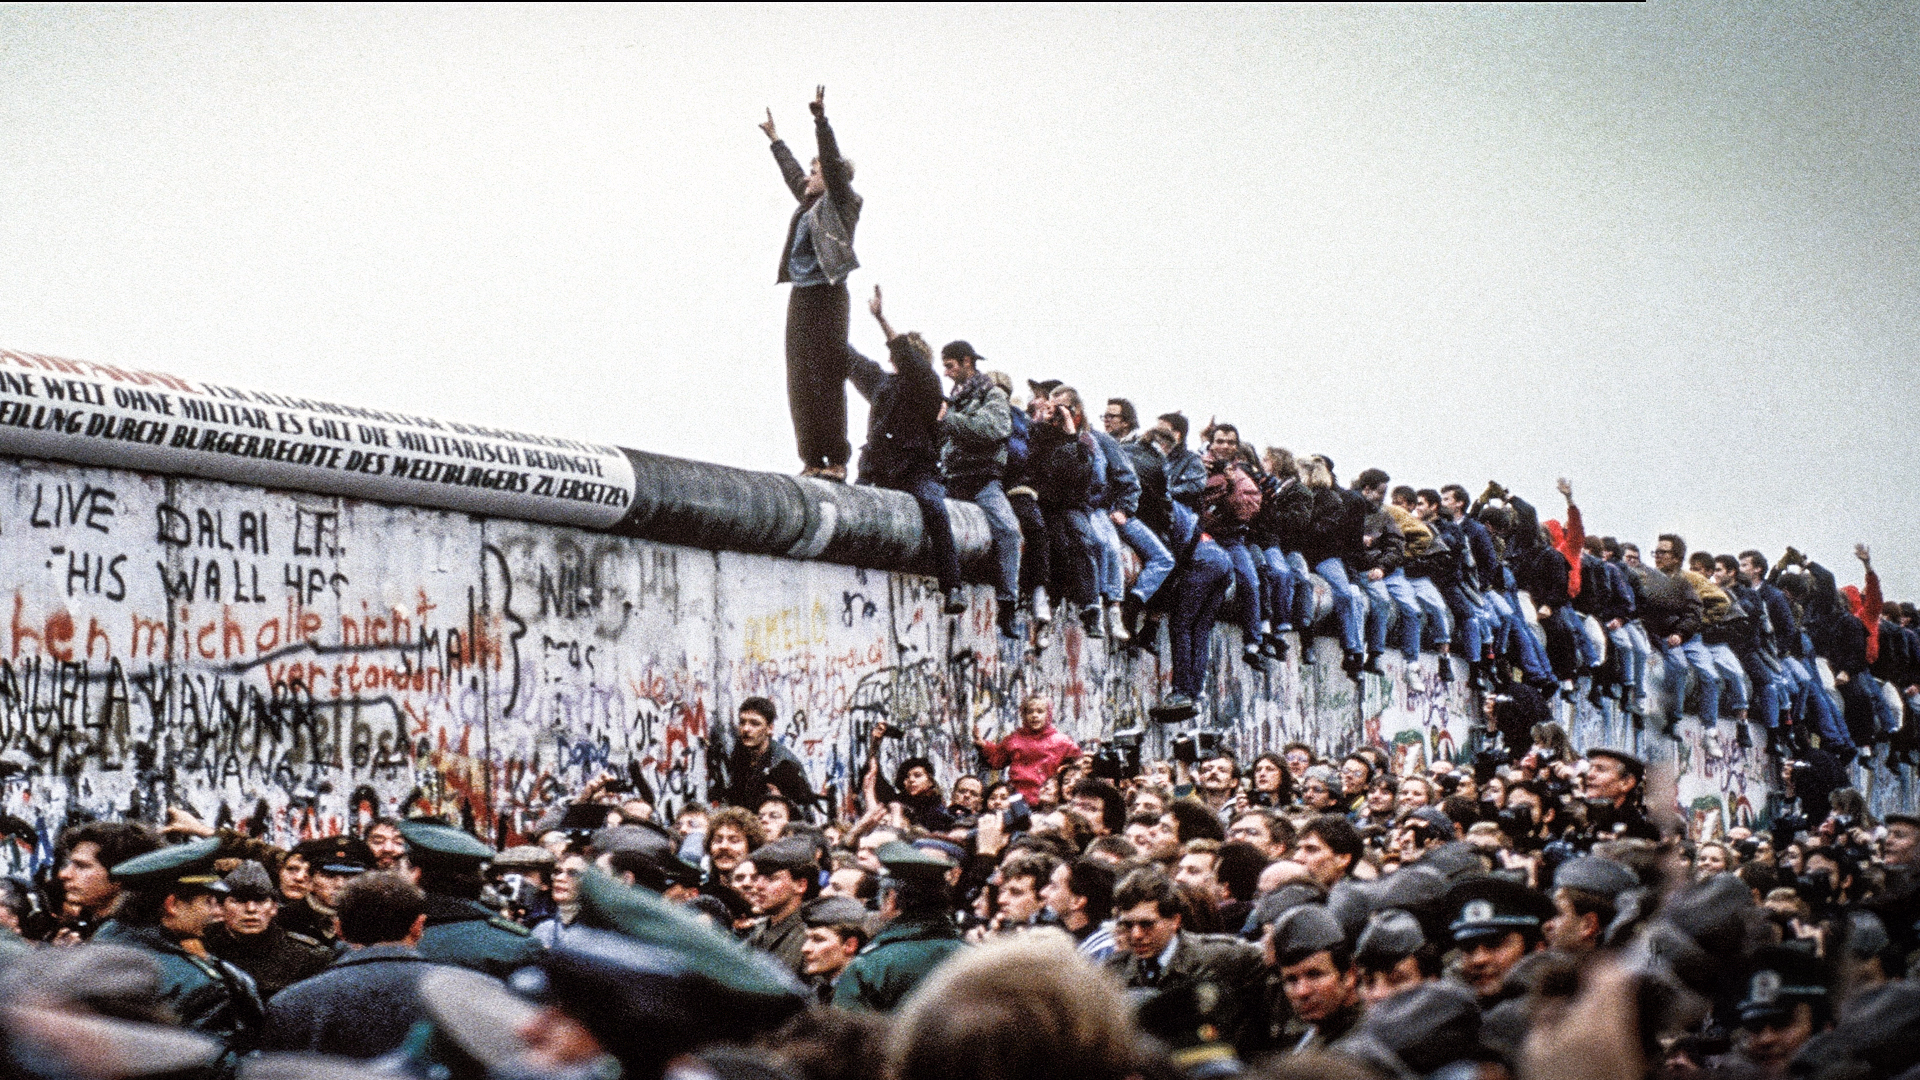 9 Νοεμβρίου 1989. Η πτώση του τείχους του Βερολίνου. Η μέρα που άλλαξε τον ρου της ιστορίας